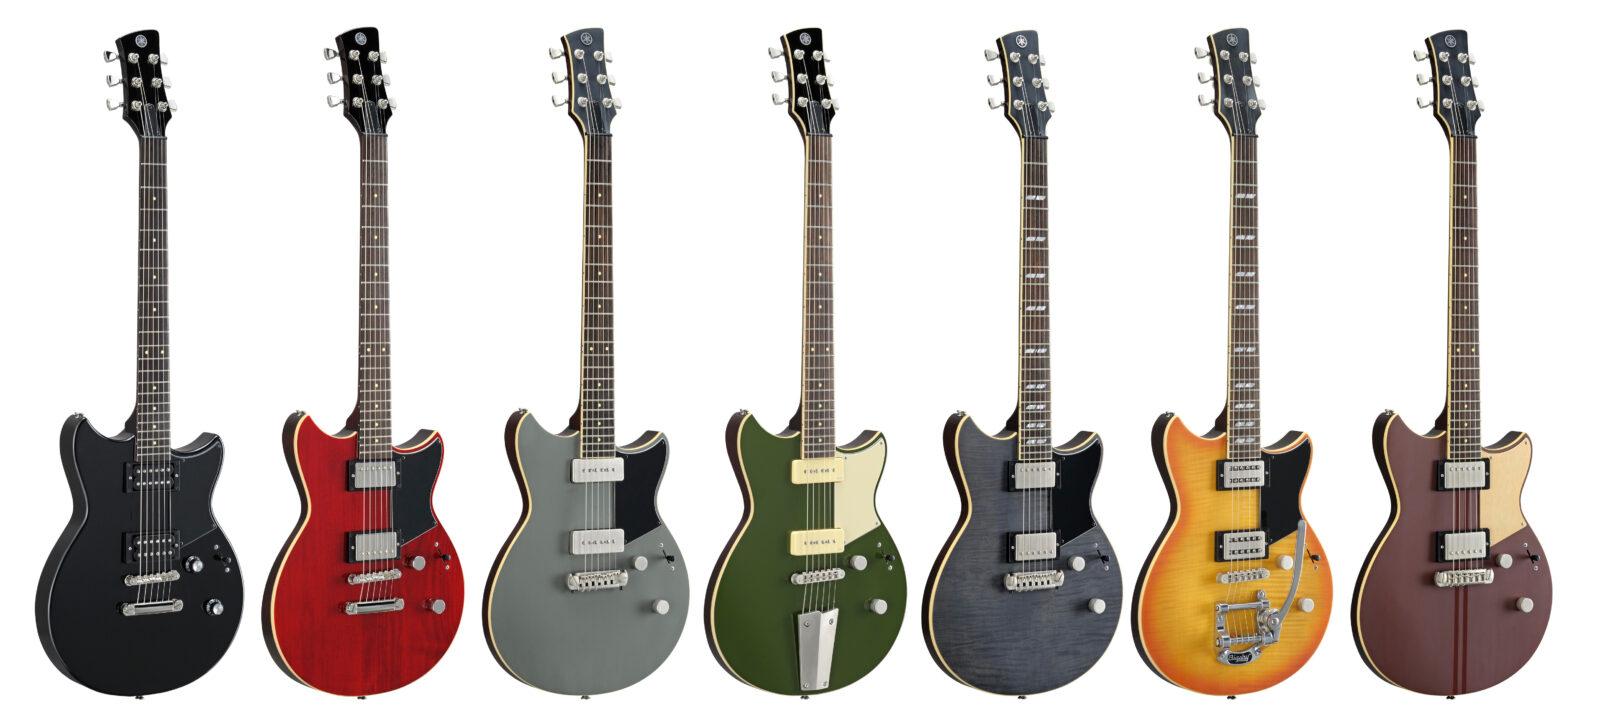 Compra en Multisononline la nueva serie de guitarras Yamaha Revstar